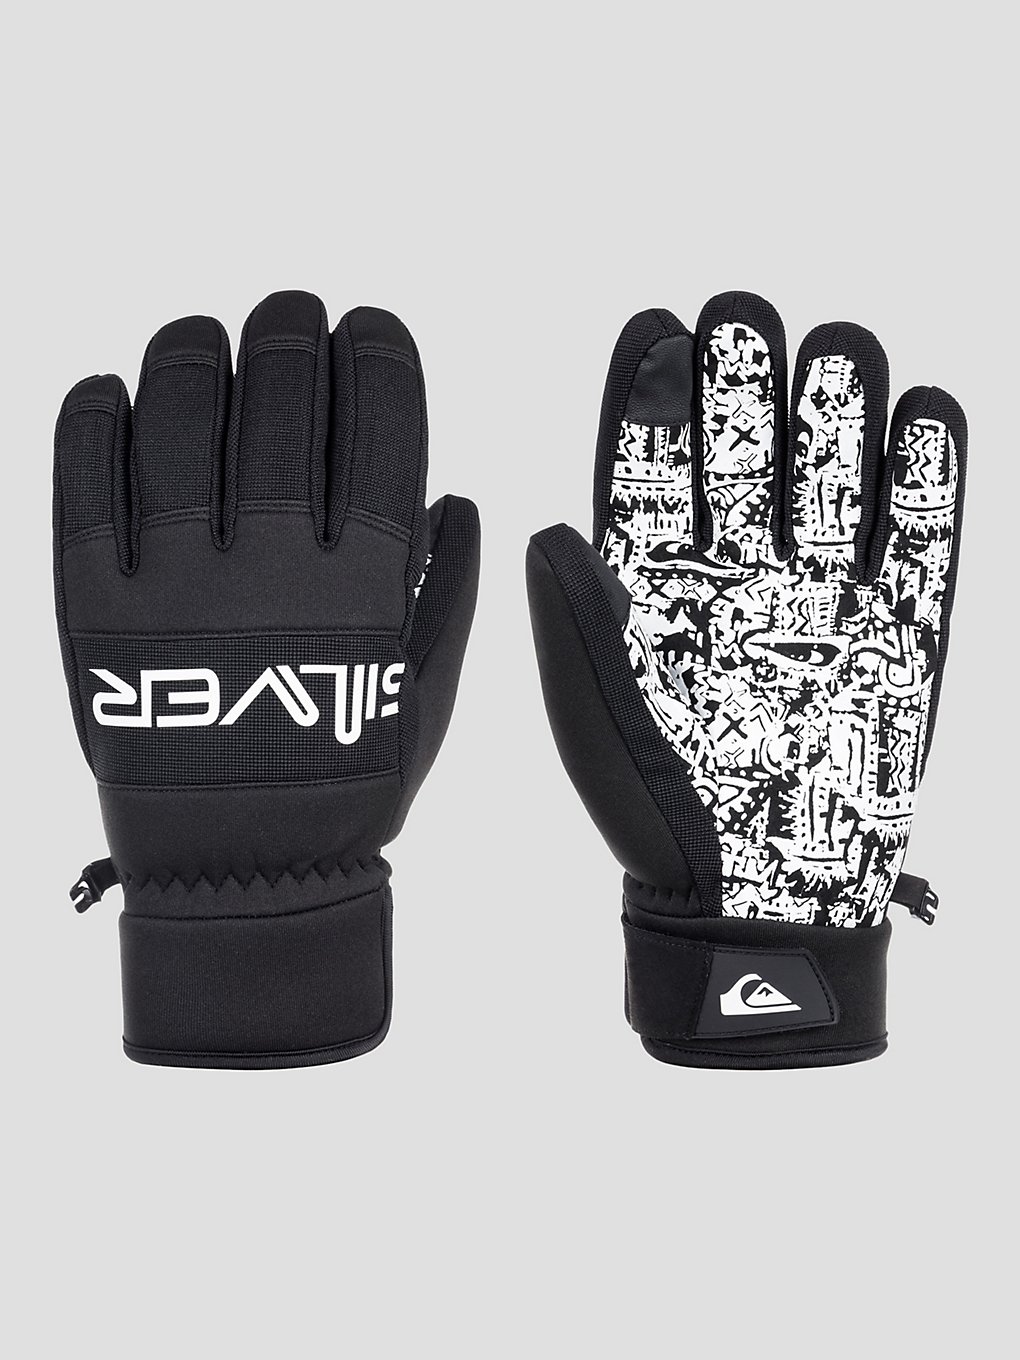 Quiksilver Method Handschuhe true black kaufen